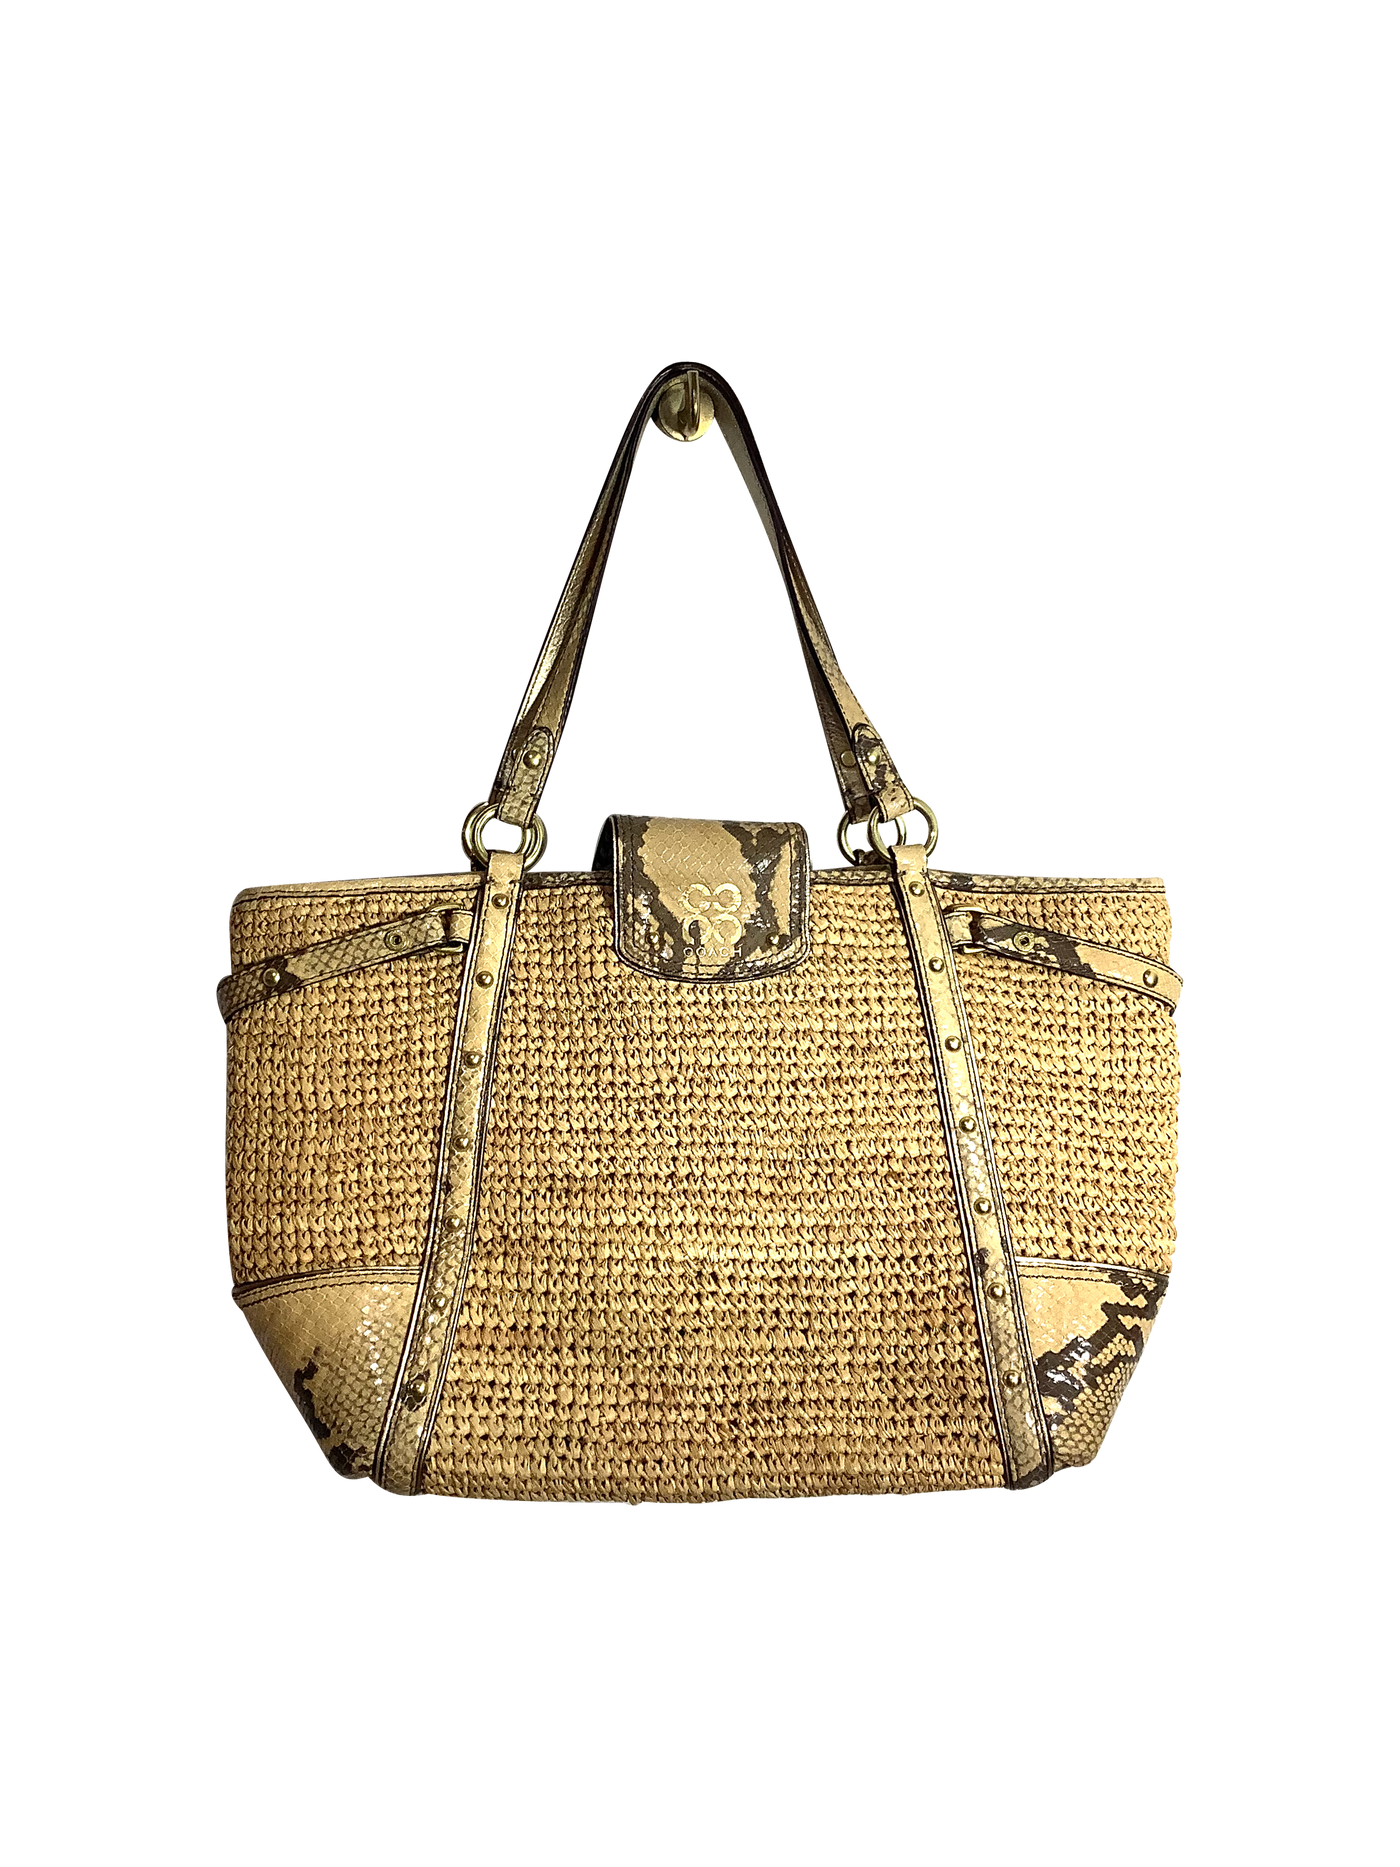 COACH Women Handbags Regular fit in Beige - Size S | 78.99 $ KOOP